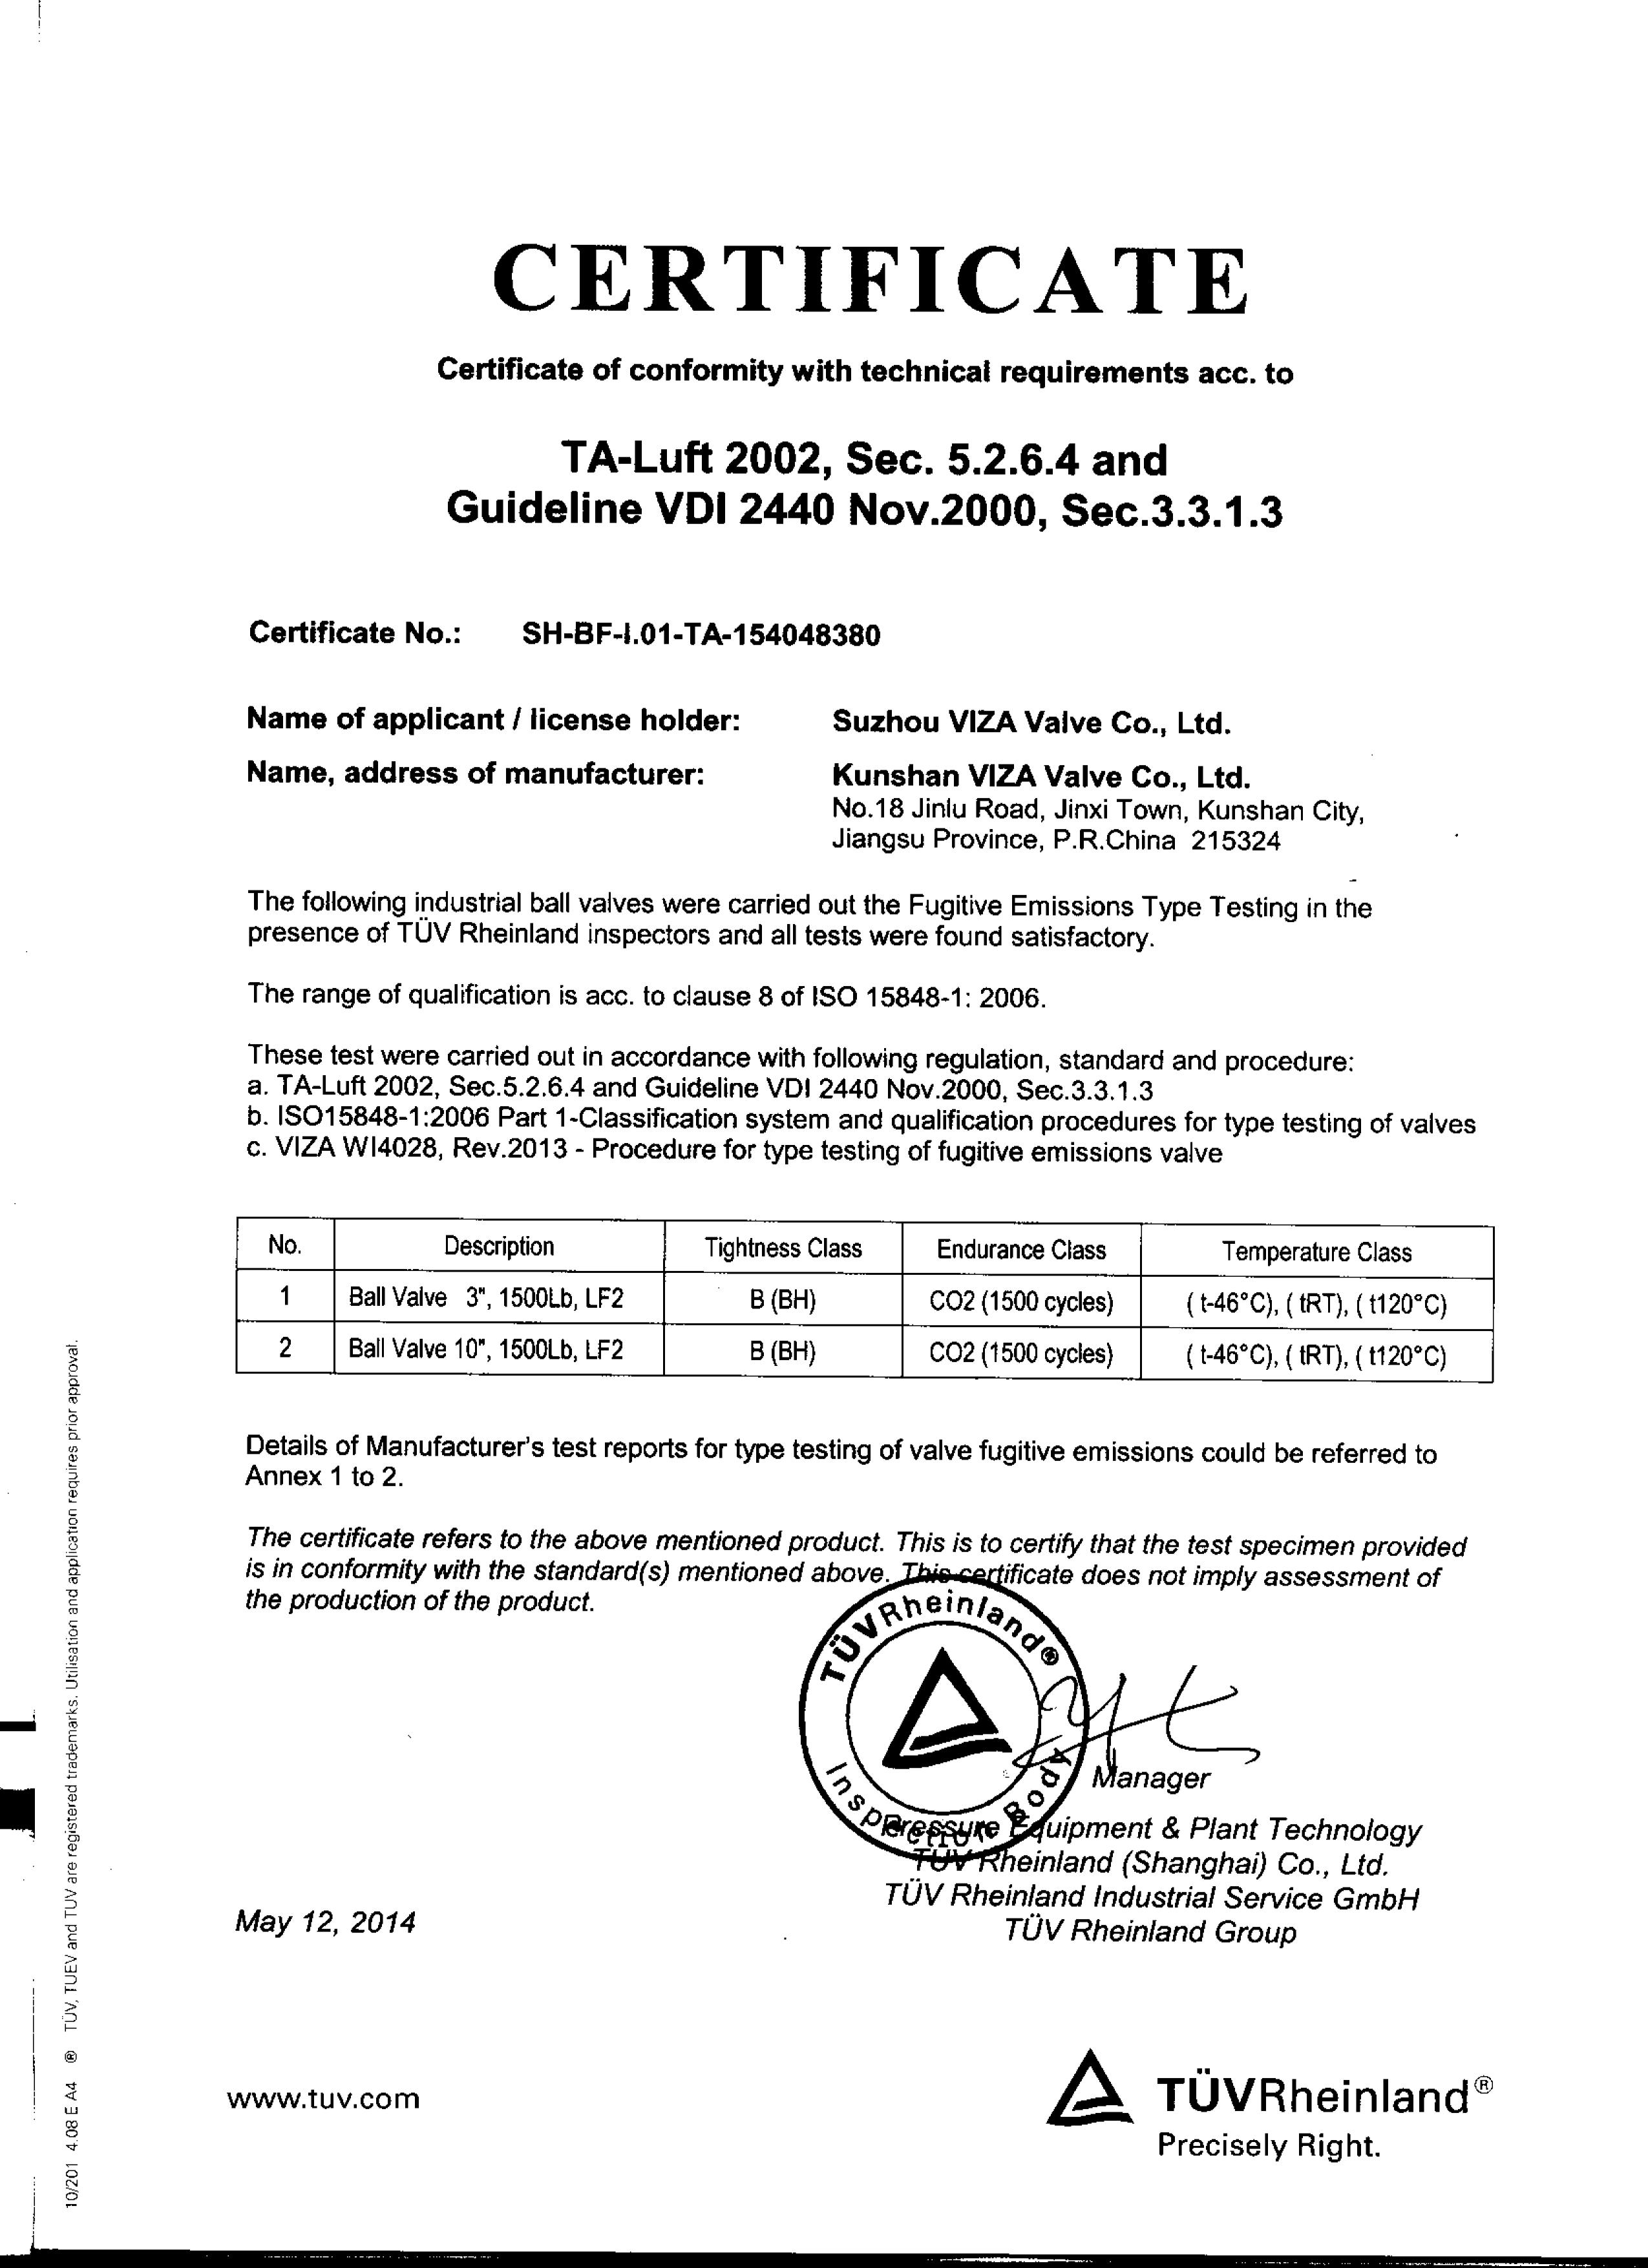 Product Certification_Suzhou Viza valve Co., Ltd